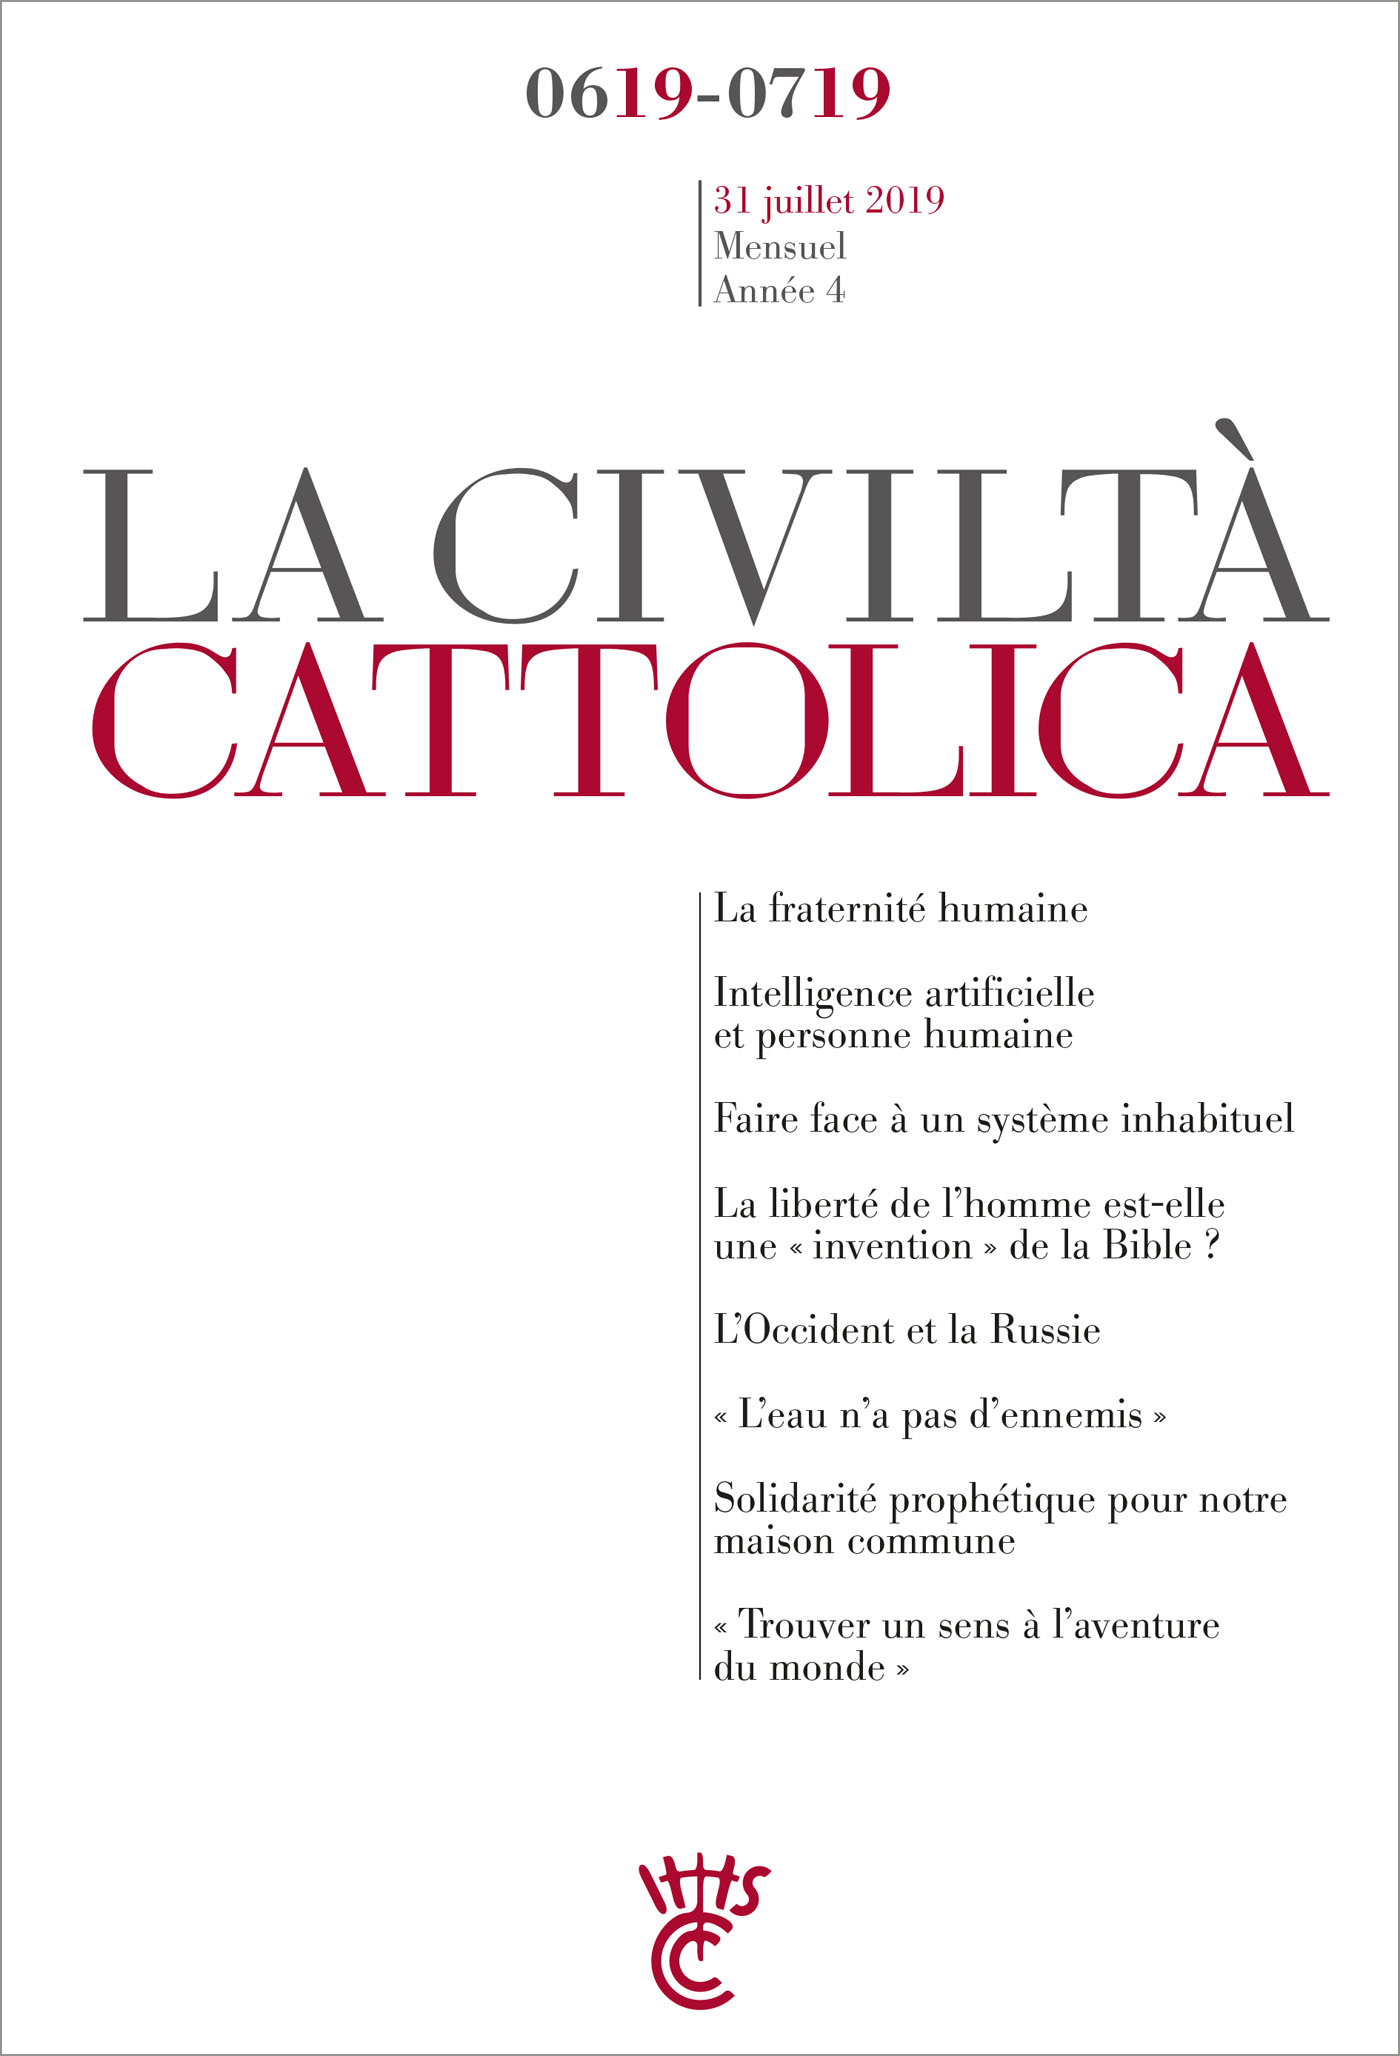 Civilta cattolica - juin-juillet 2019